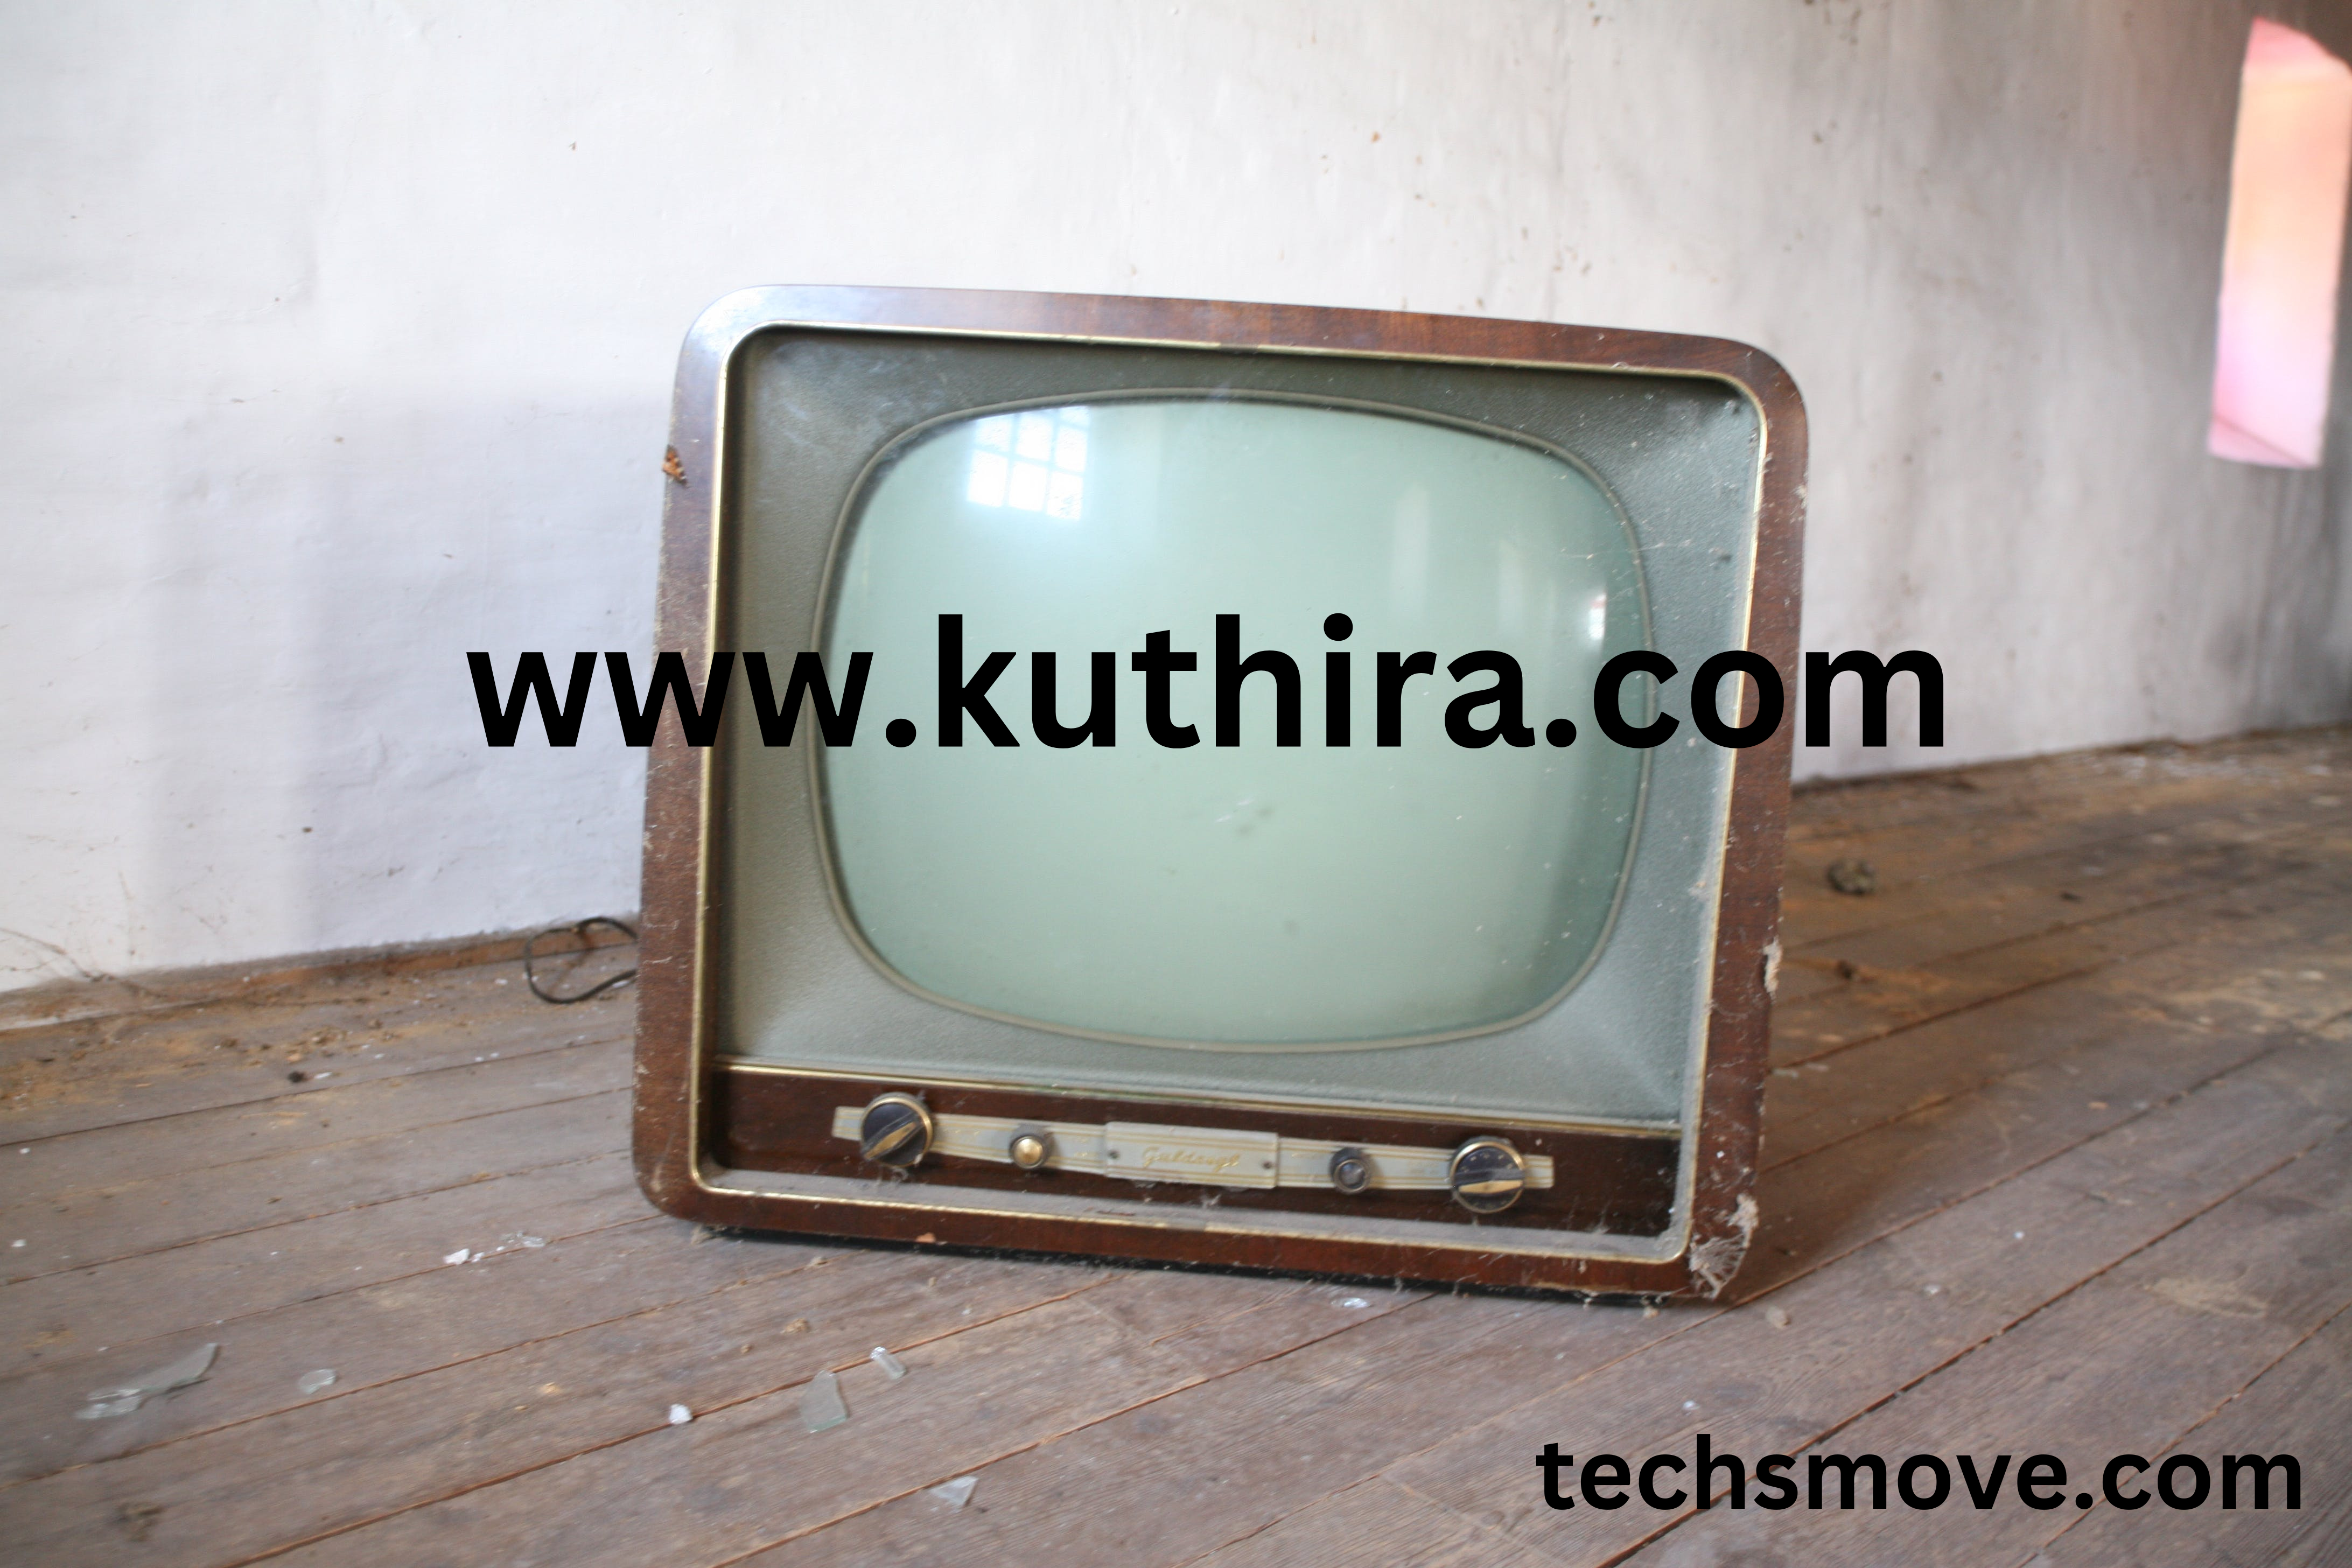 www.kuthira.com Serial